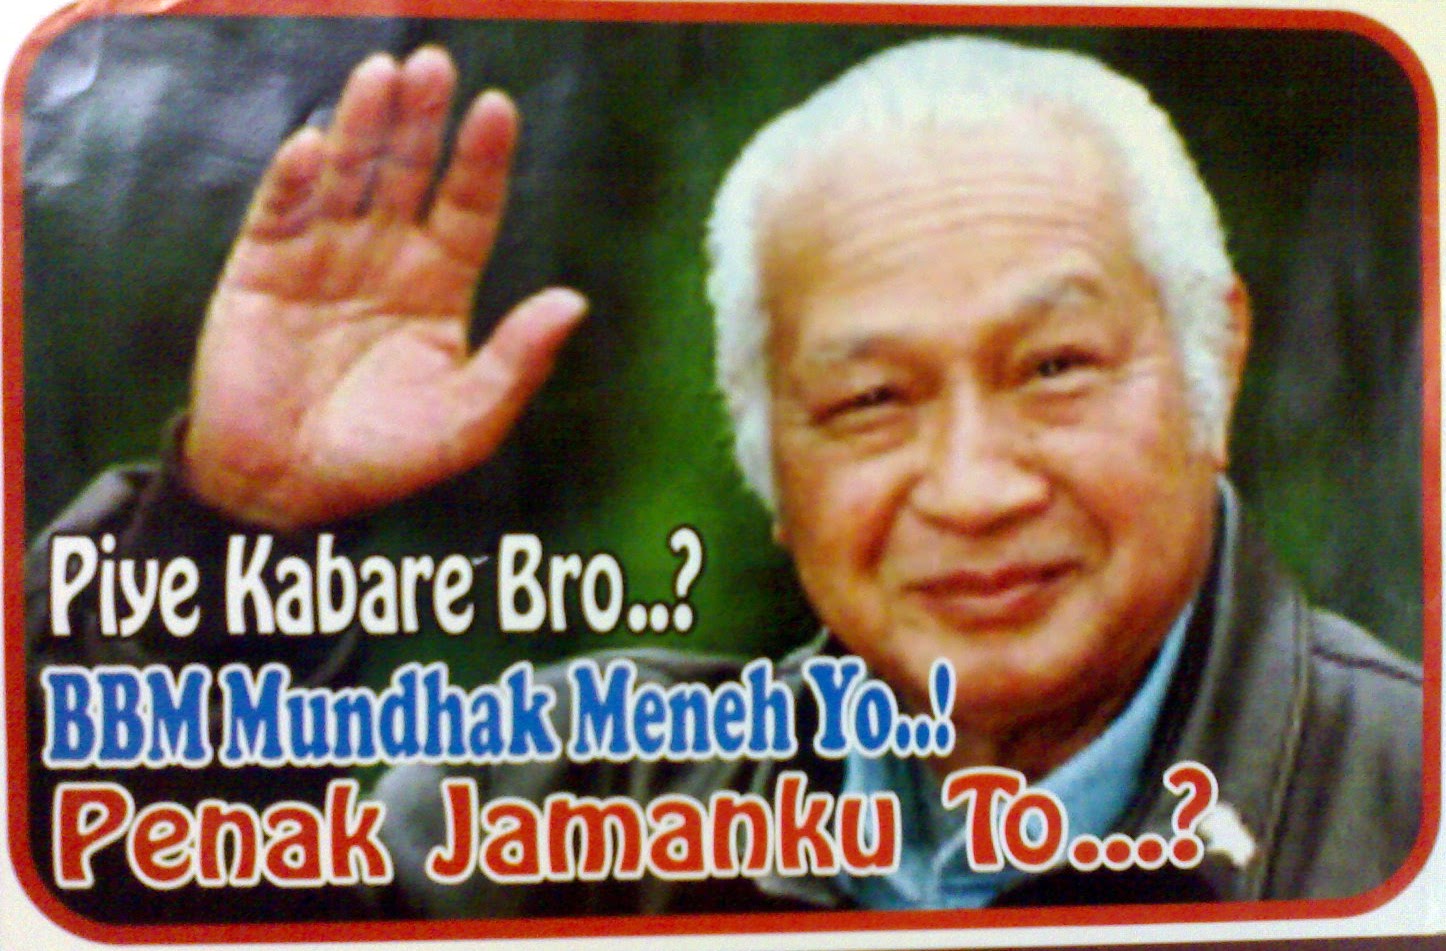 Pertanyaan khusus buat pendukung KMP dan Prabowo